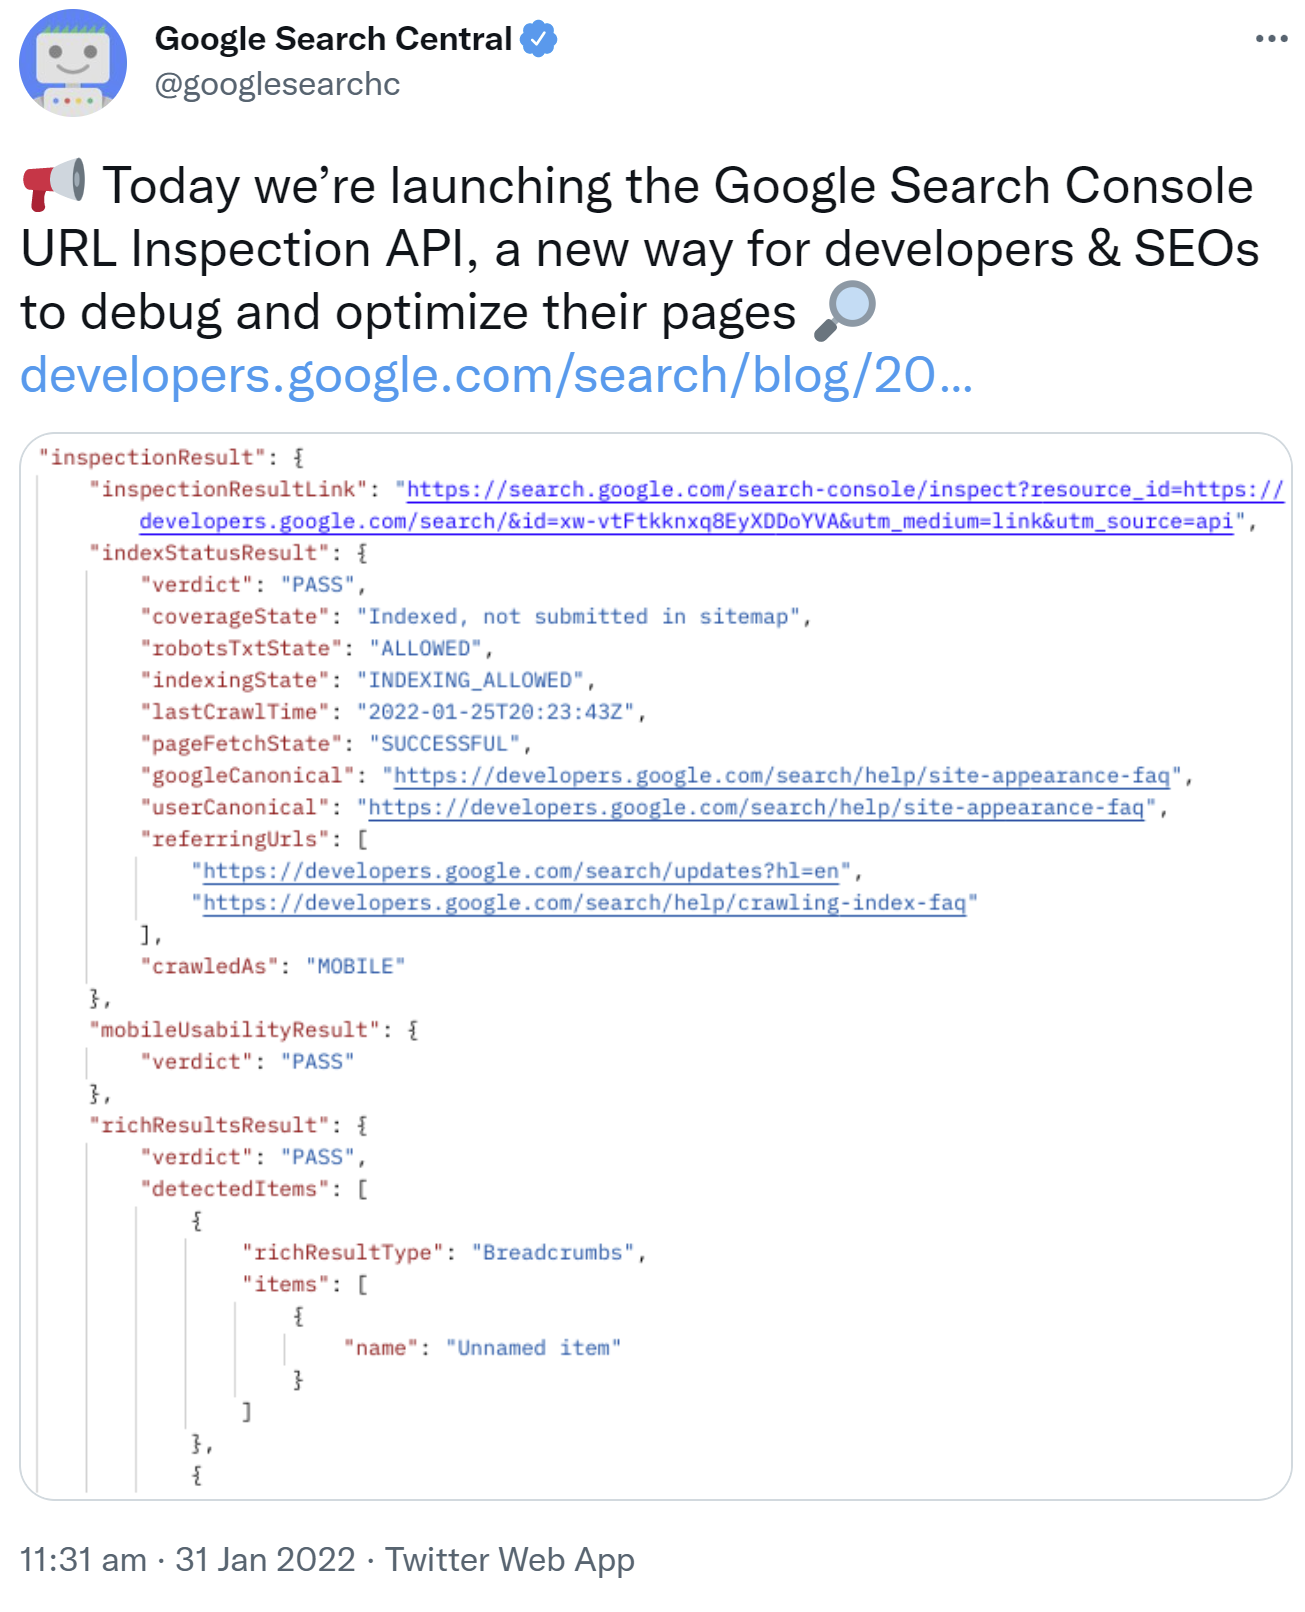 Google Search Console URL Inspection URL ist jetzt verfügbar - Google per Twitter